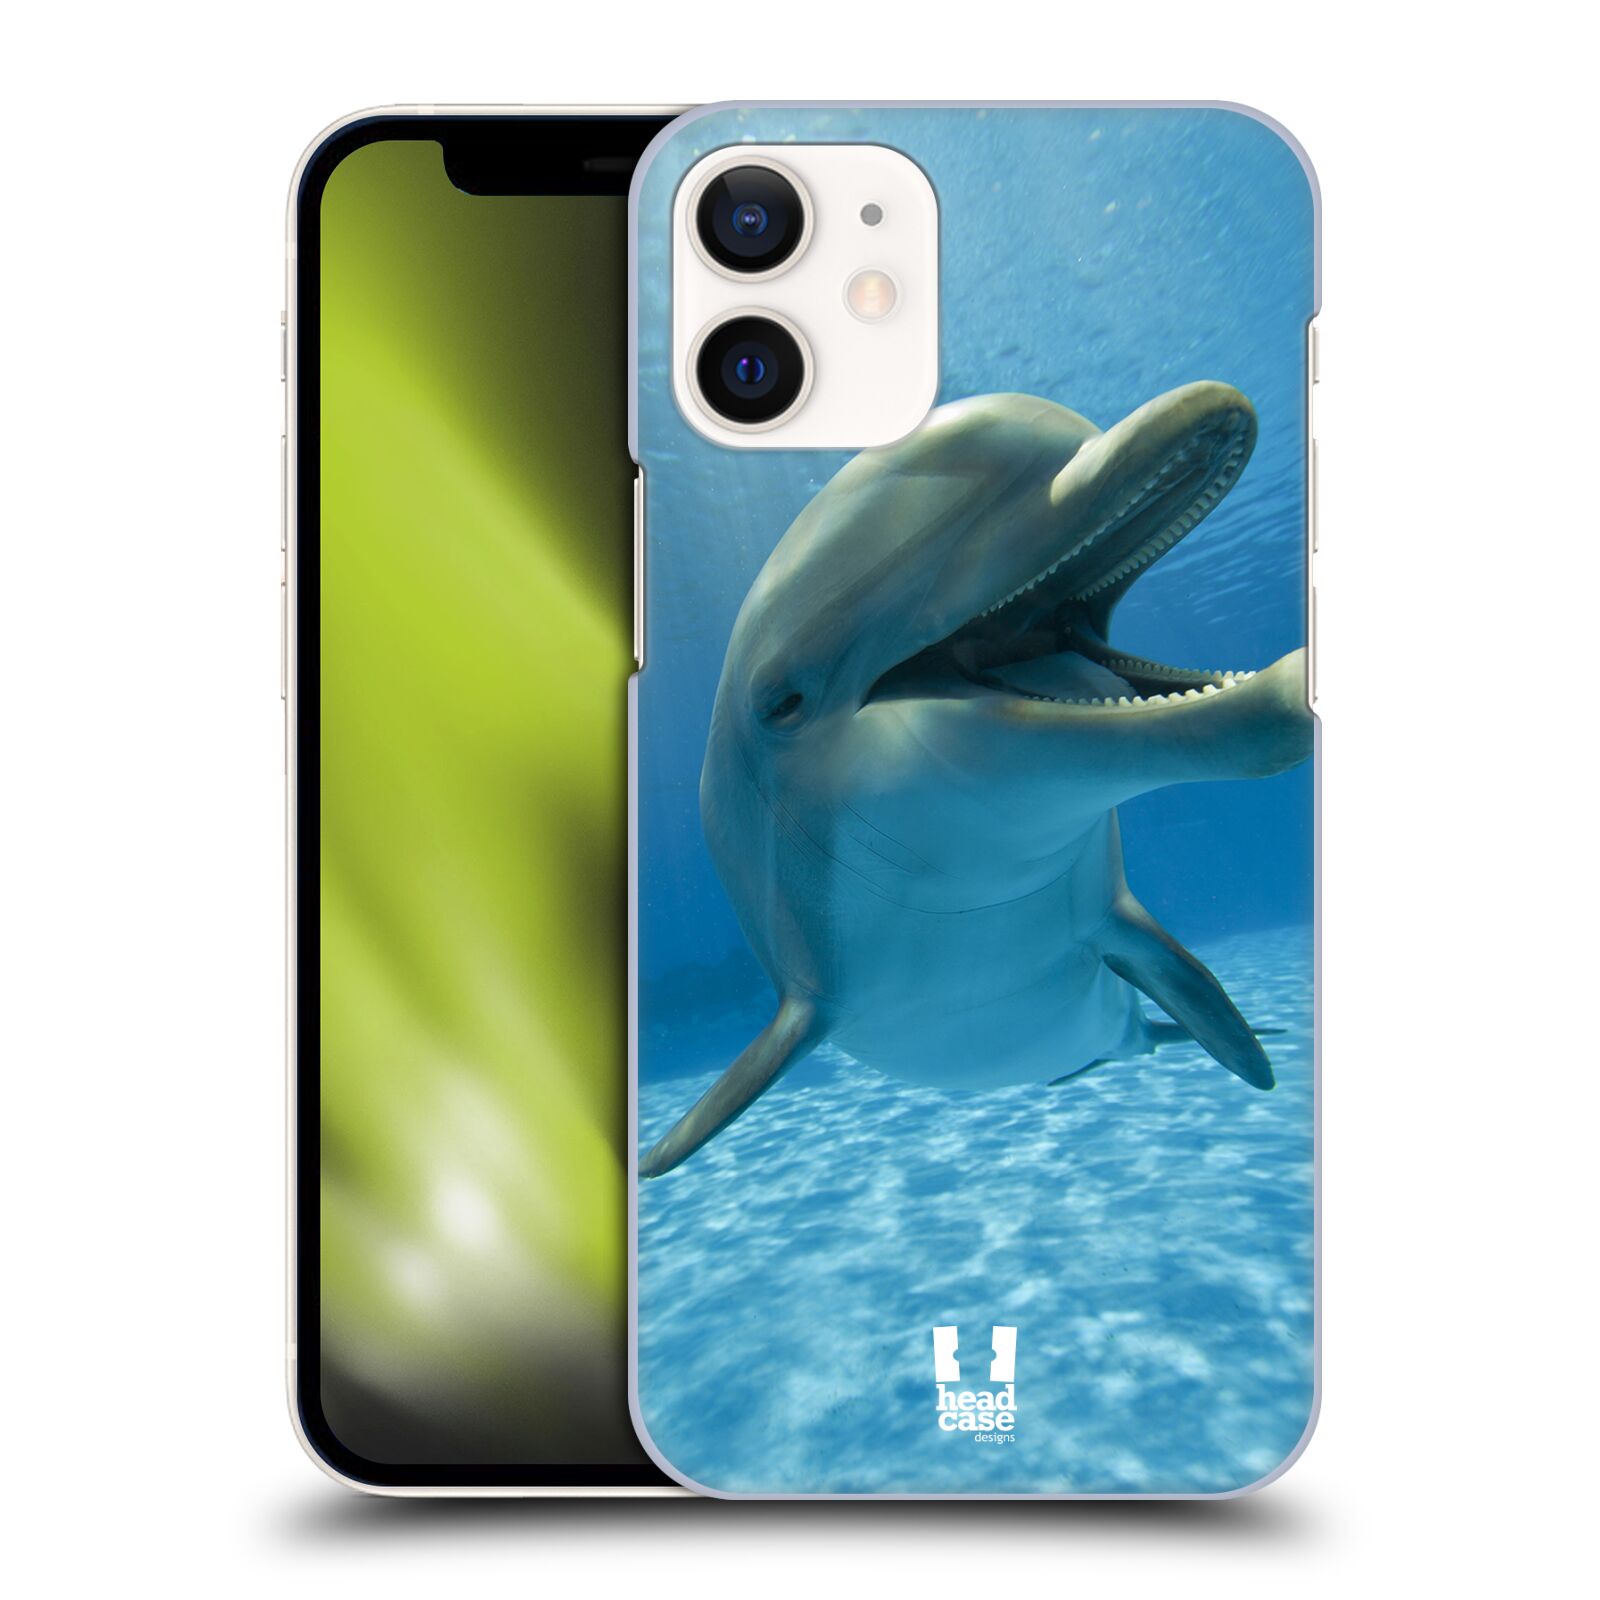 Zadní obal pro mobil Apple iPhone 12 MINI - HEAD CASE - Svět zvířat delfín v moři